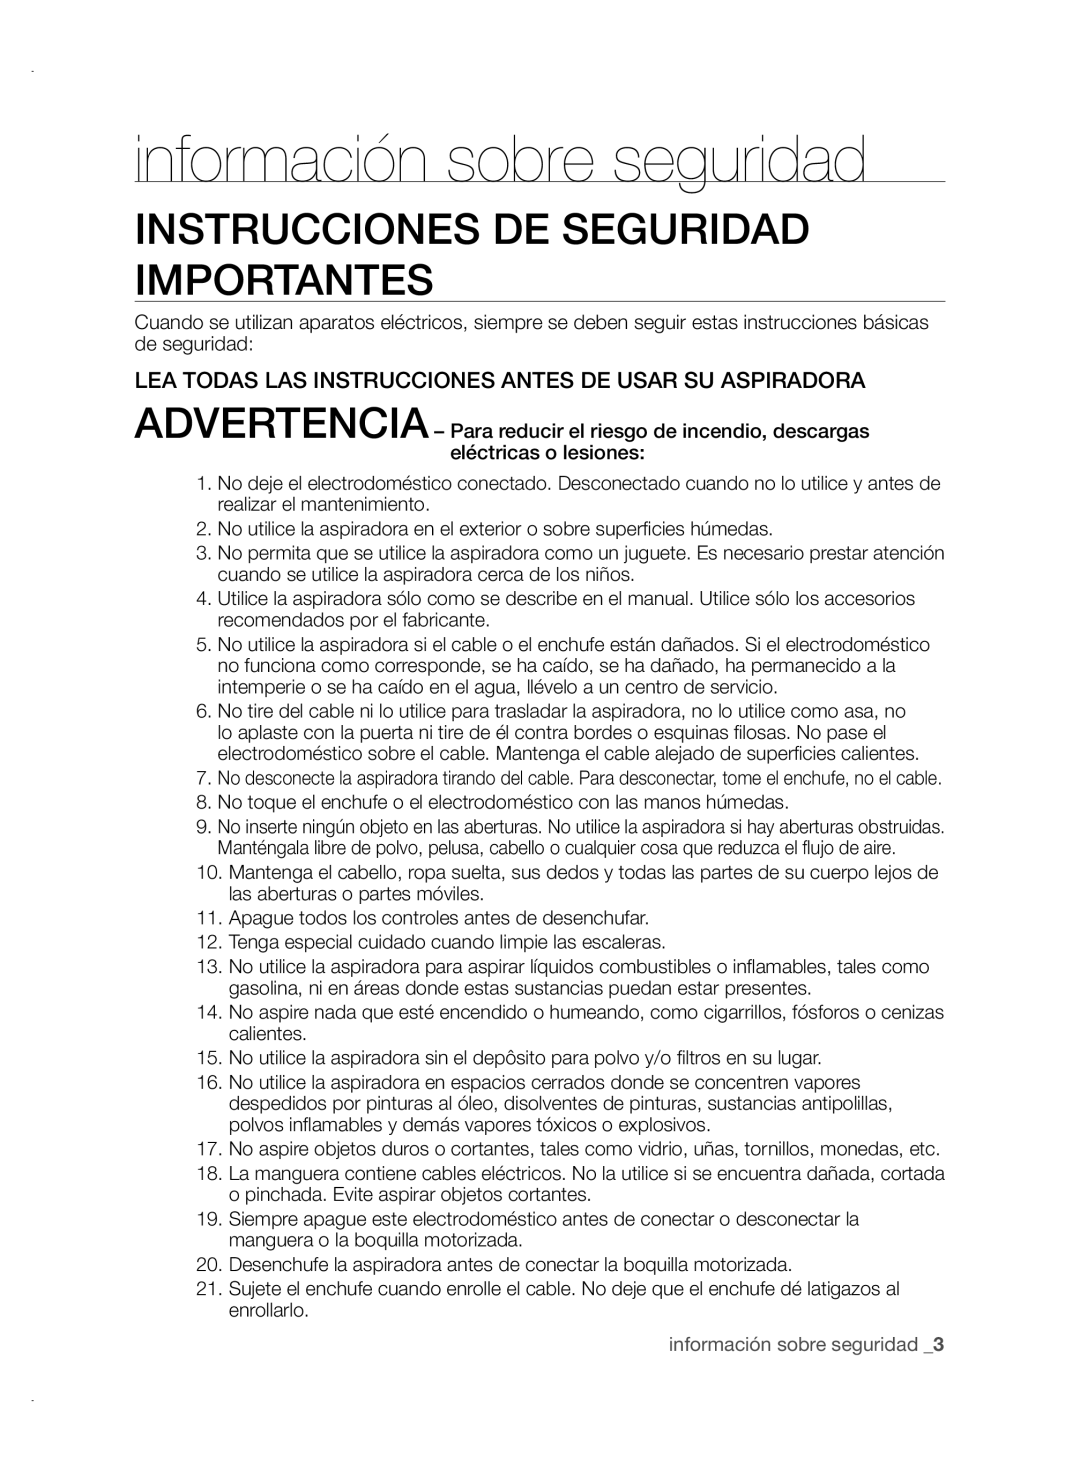 Samsung VCC88P0H1B user manual Instrucciones De Seguridad Importantes, información sobre seguridad 